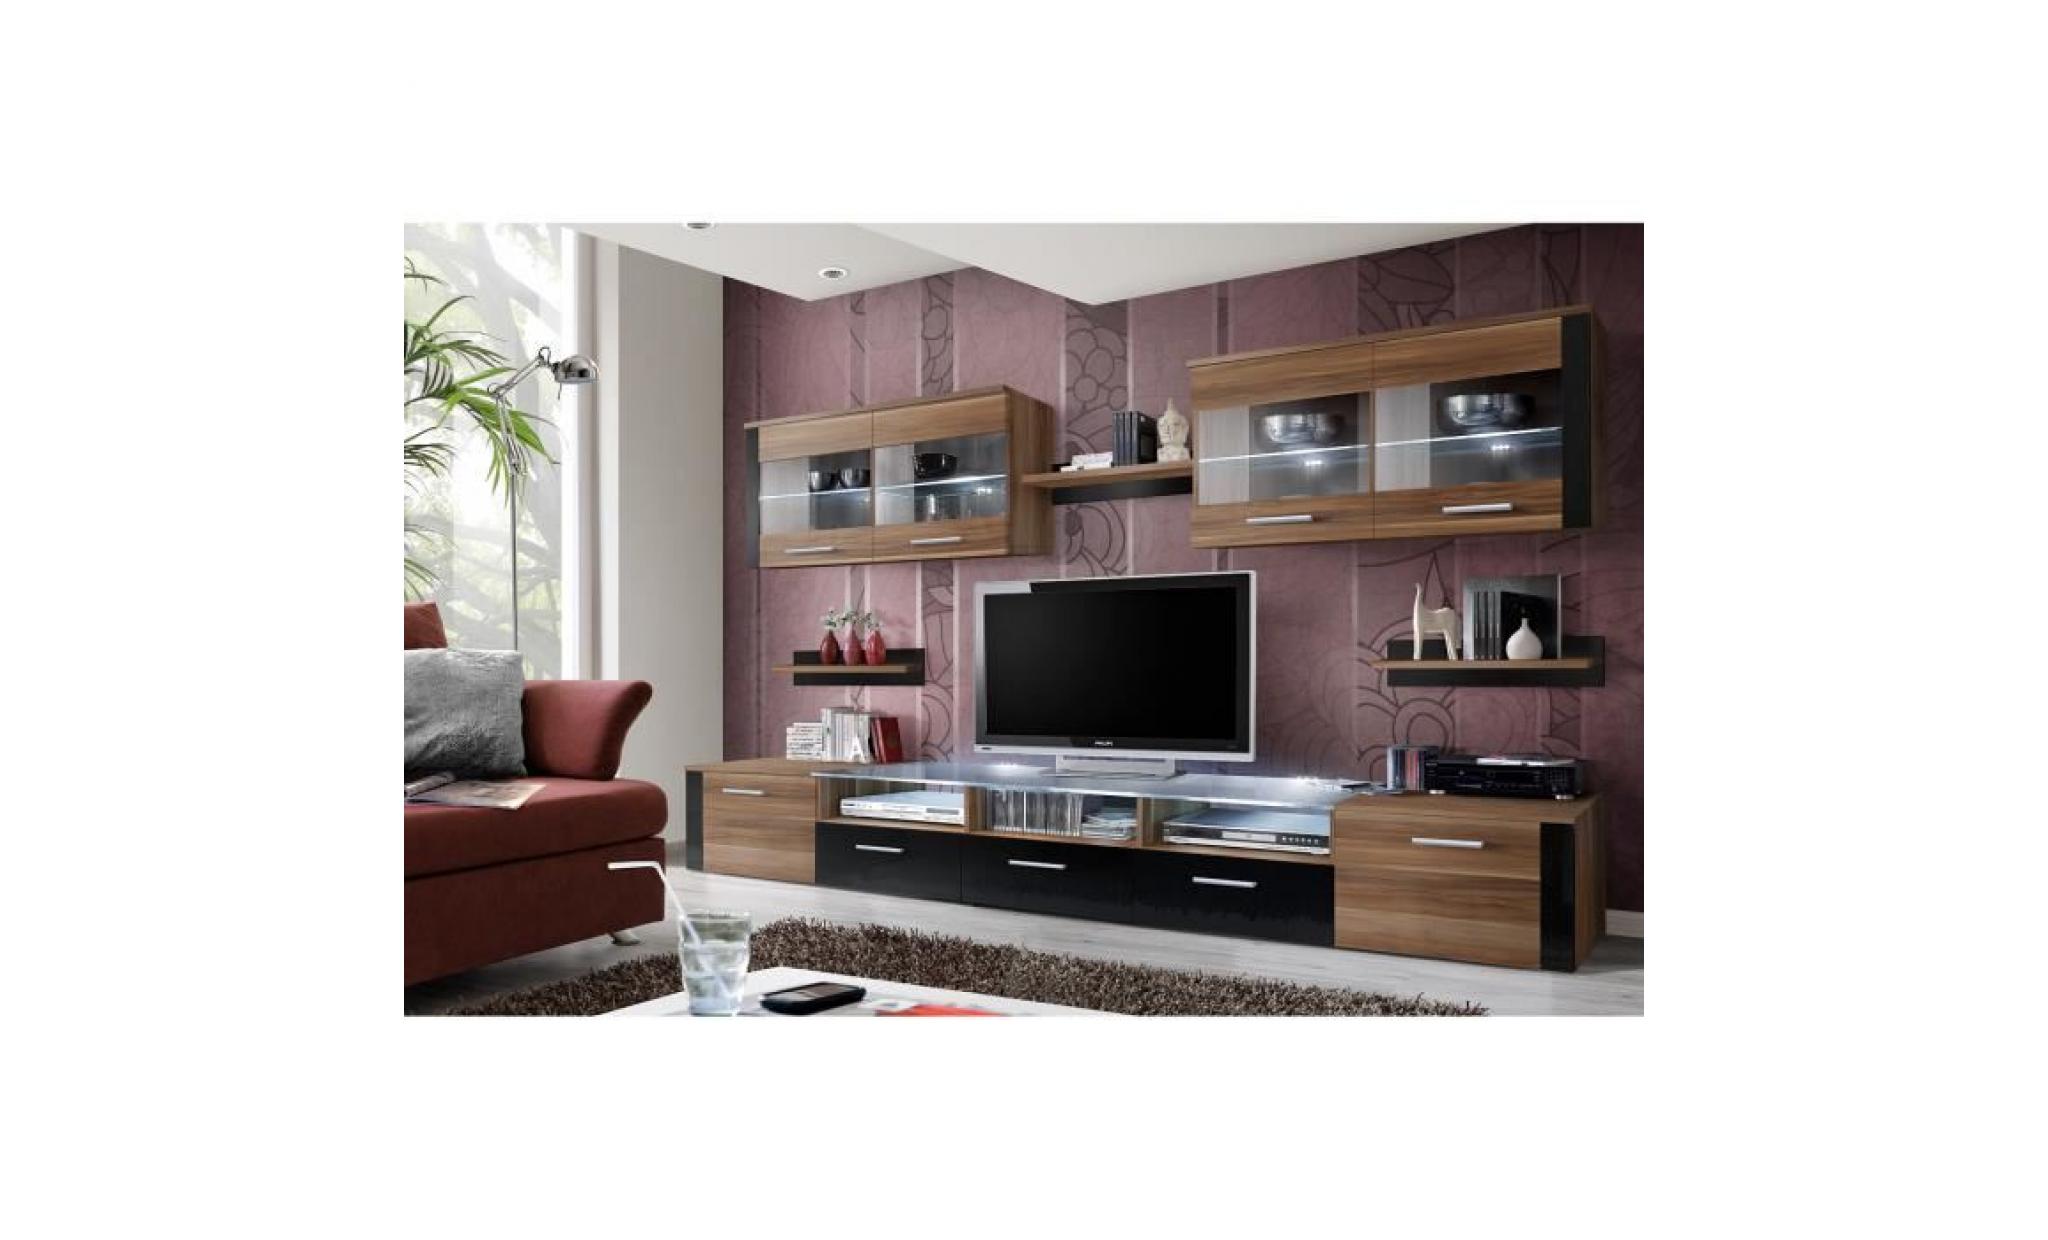 meuble de salon, meubletv design complet focus prunier / noir brillant + led. vitrines suspendues.tous les elements sont modulables